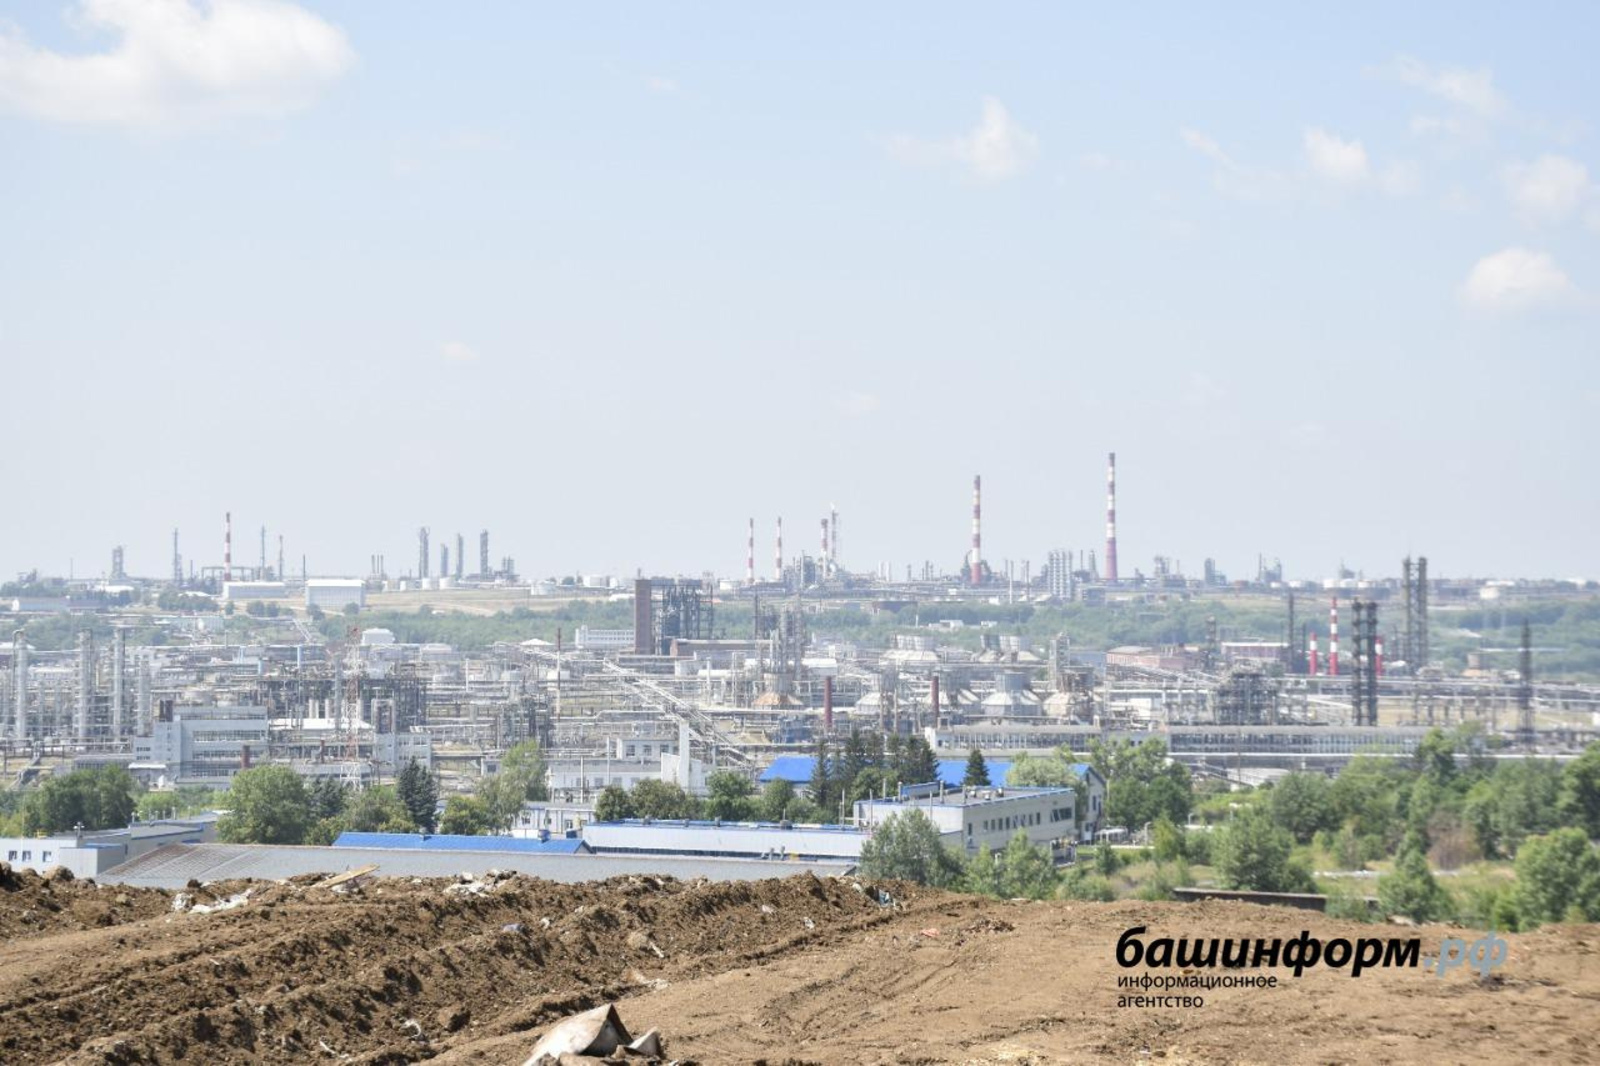 До 2030 года в Башкортостане появятся 11 стационарных постов наблюдения за состоянием воздуха